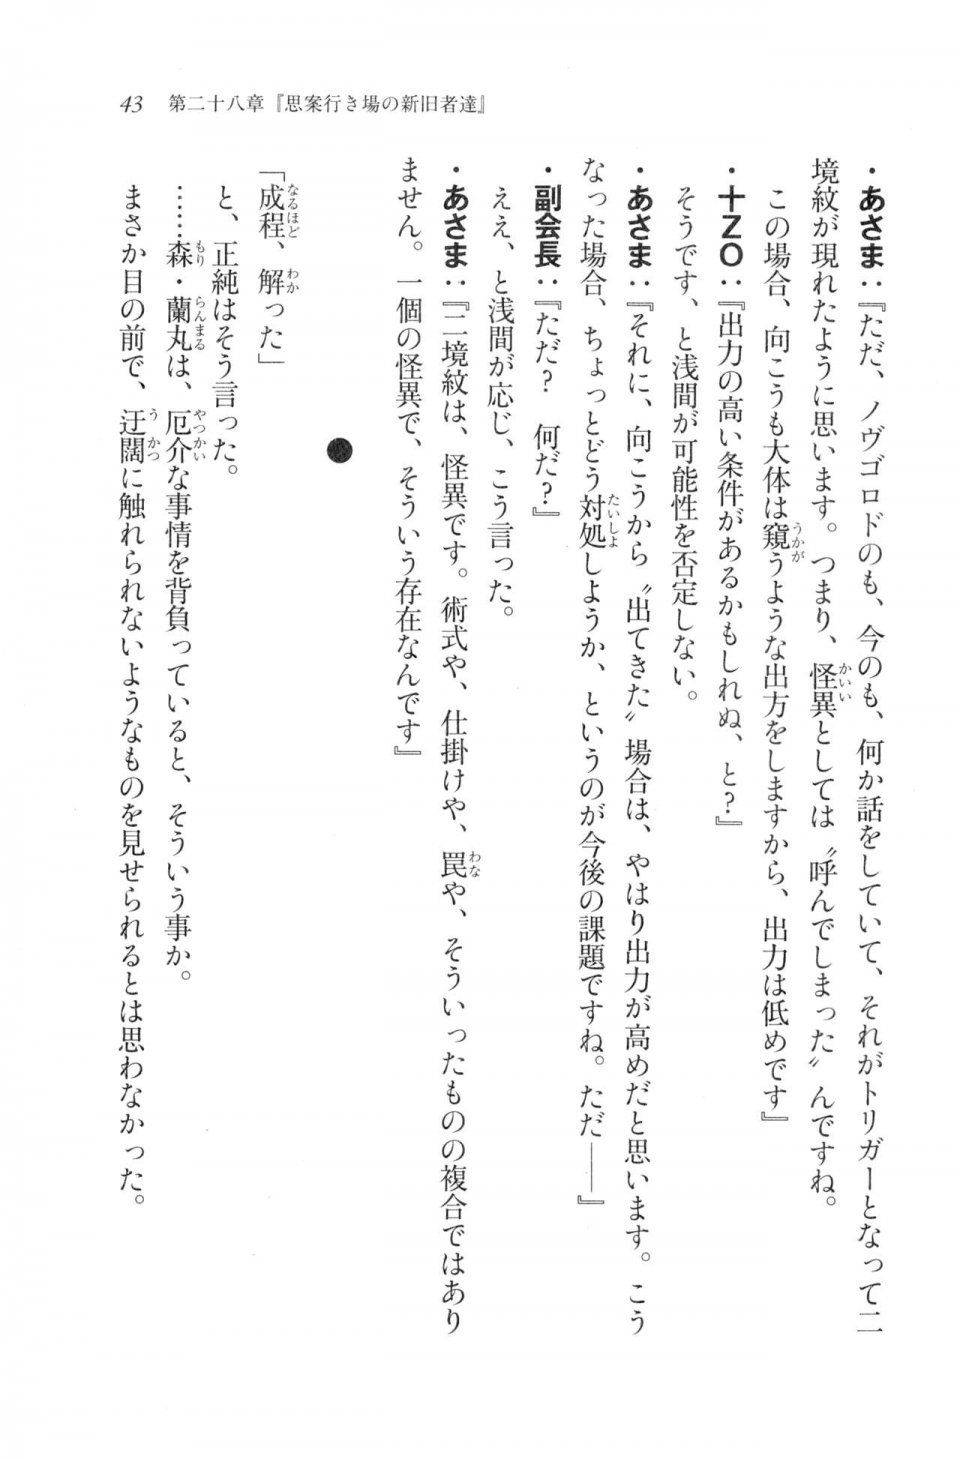 Kyoukai Senjou no Horizon LN Vol 20(8B) - Photo #43